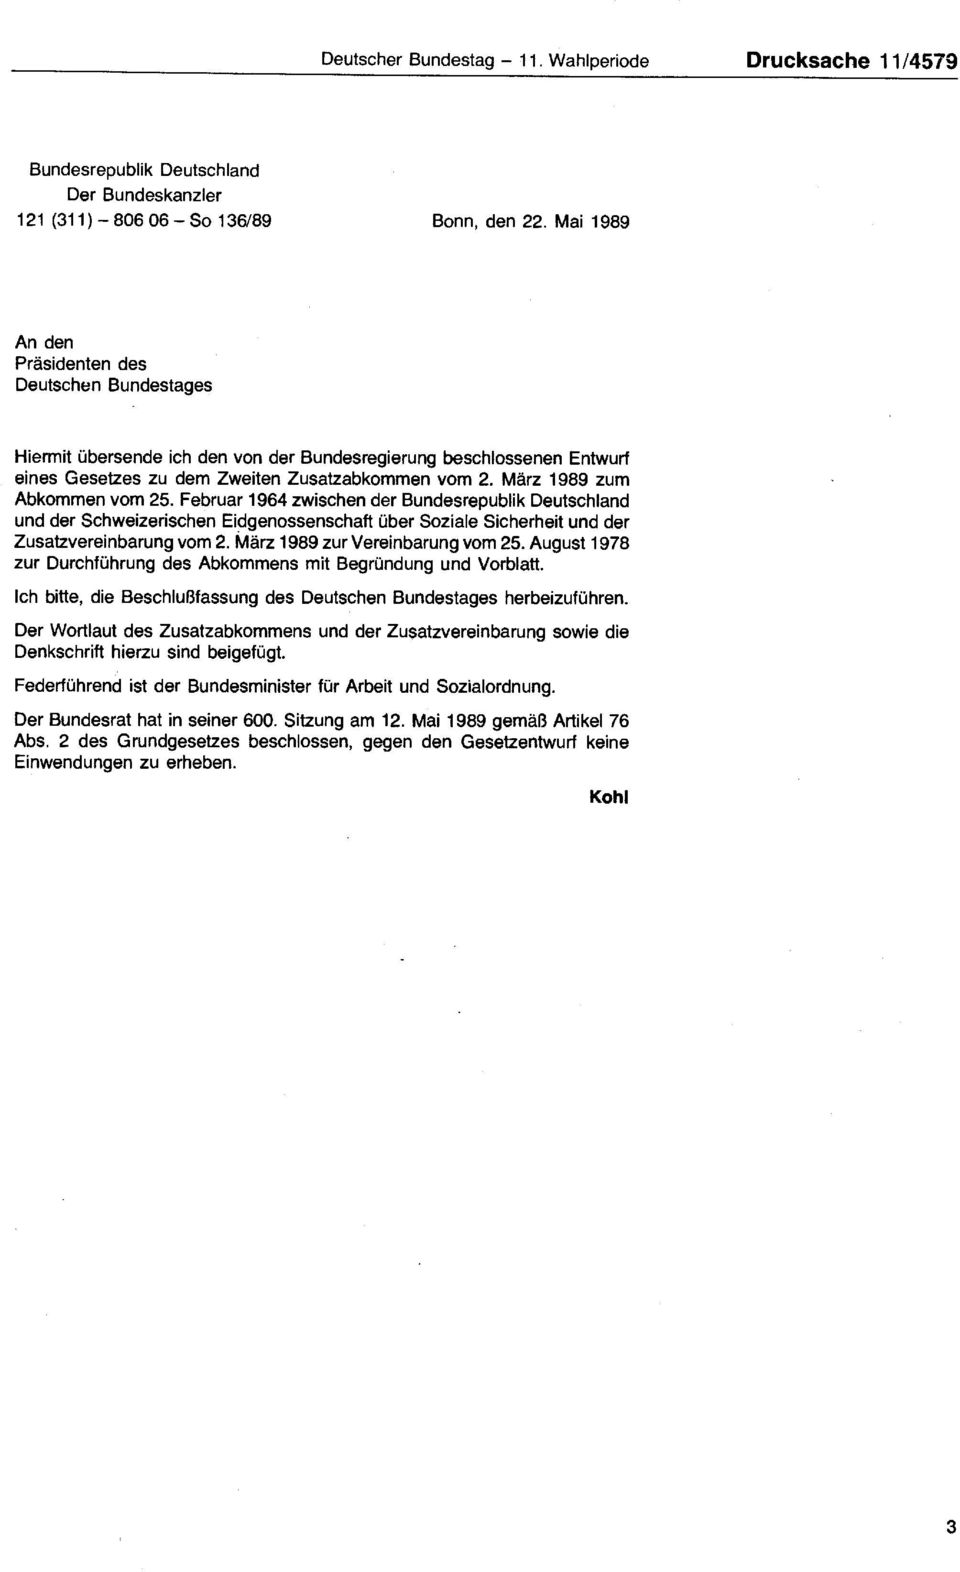 März 1989 zum Abkommen vom 25. Februar 1964 zwischen der Bundesrepublik Deutschland und der Schweizerischen Eidgenossenschaft über Soziale Sicherheit und der Zusatzvereinbarung vom 2.